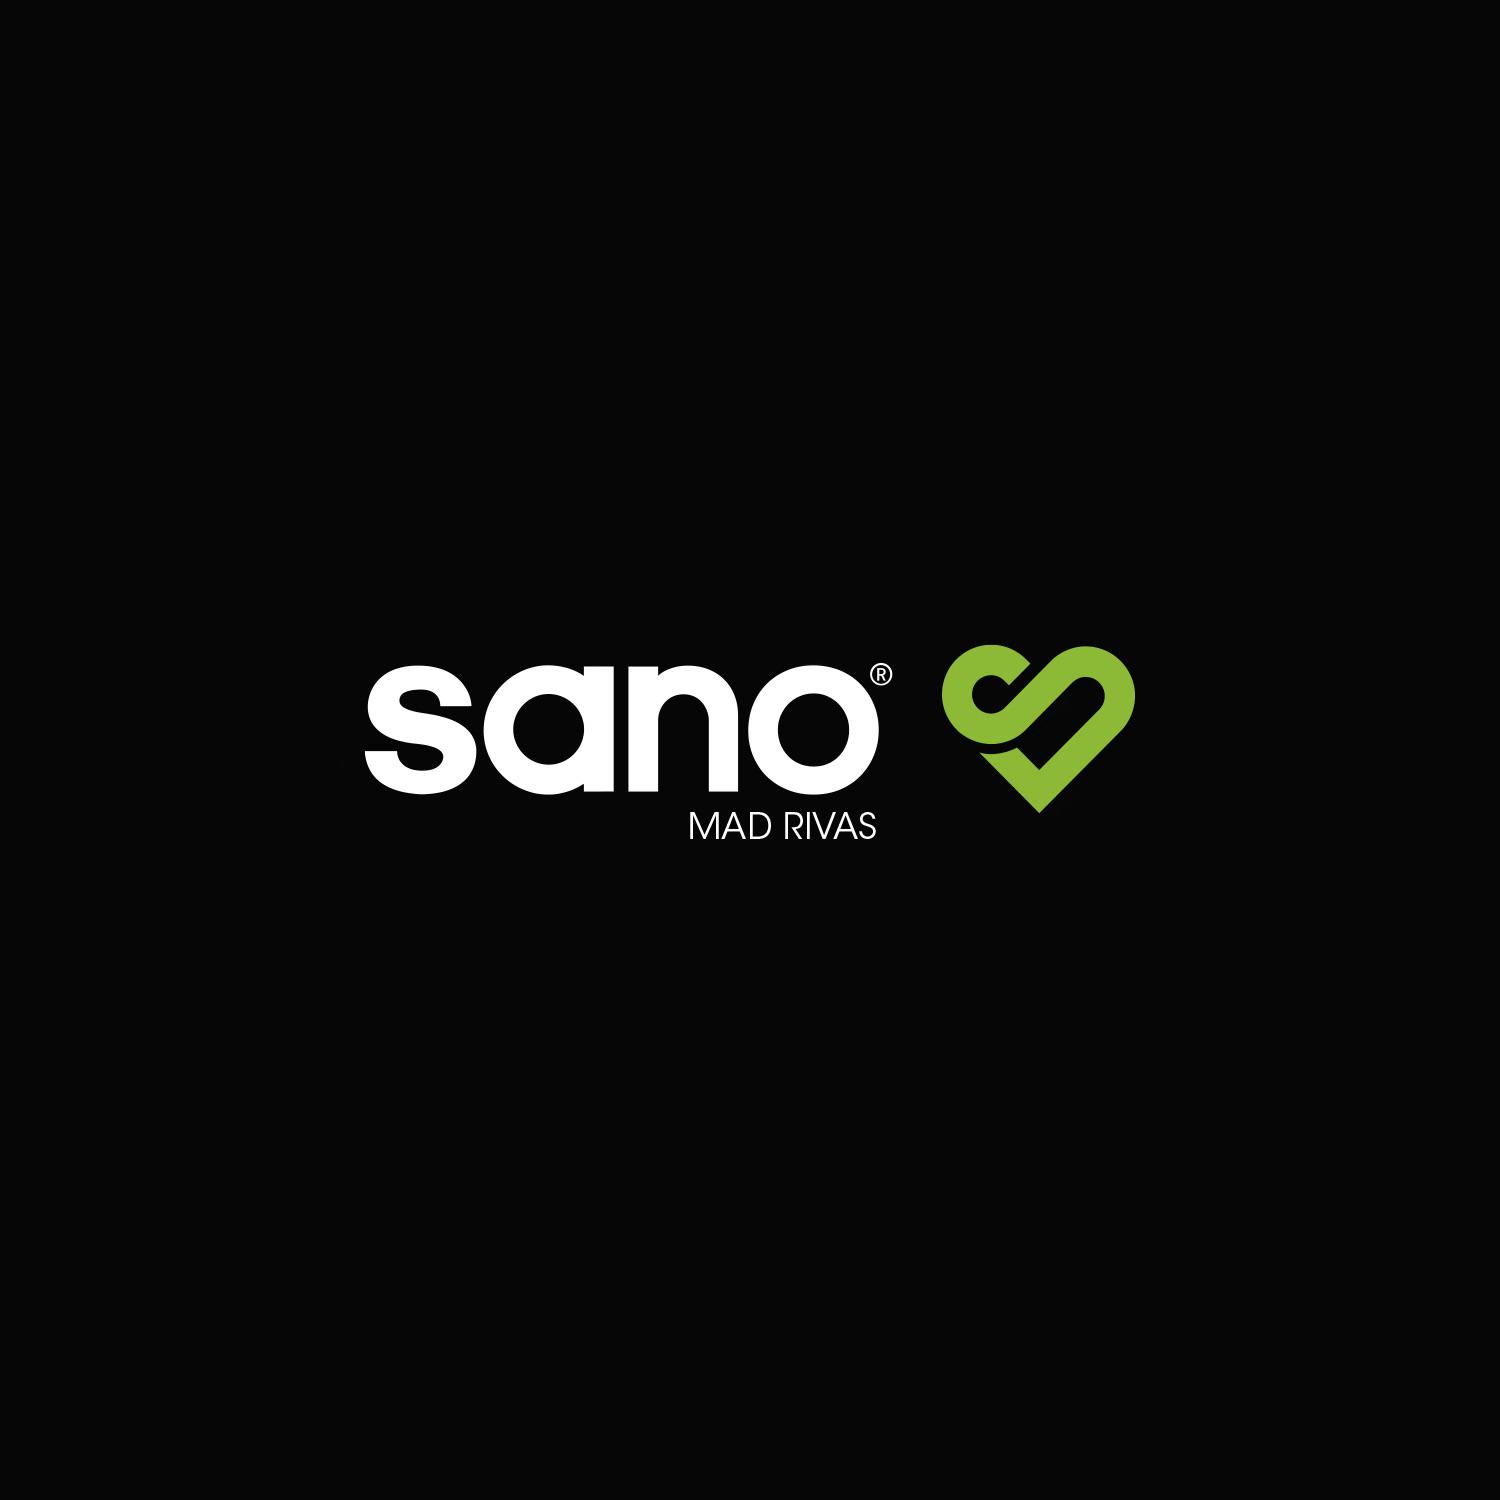 Sano Madrid Rivas Logo